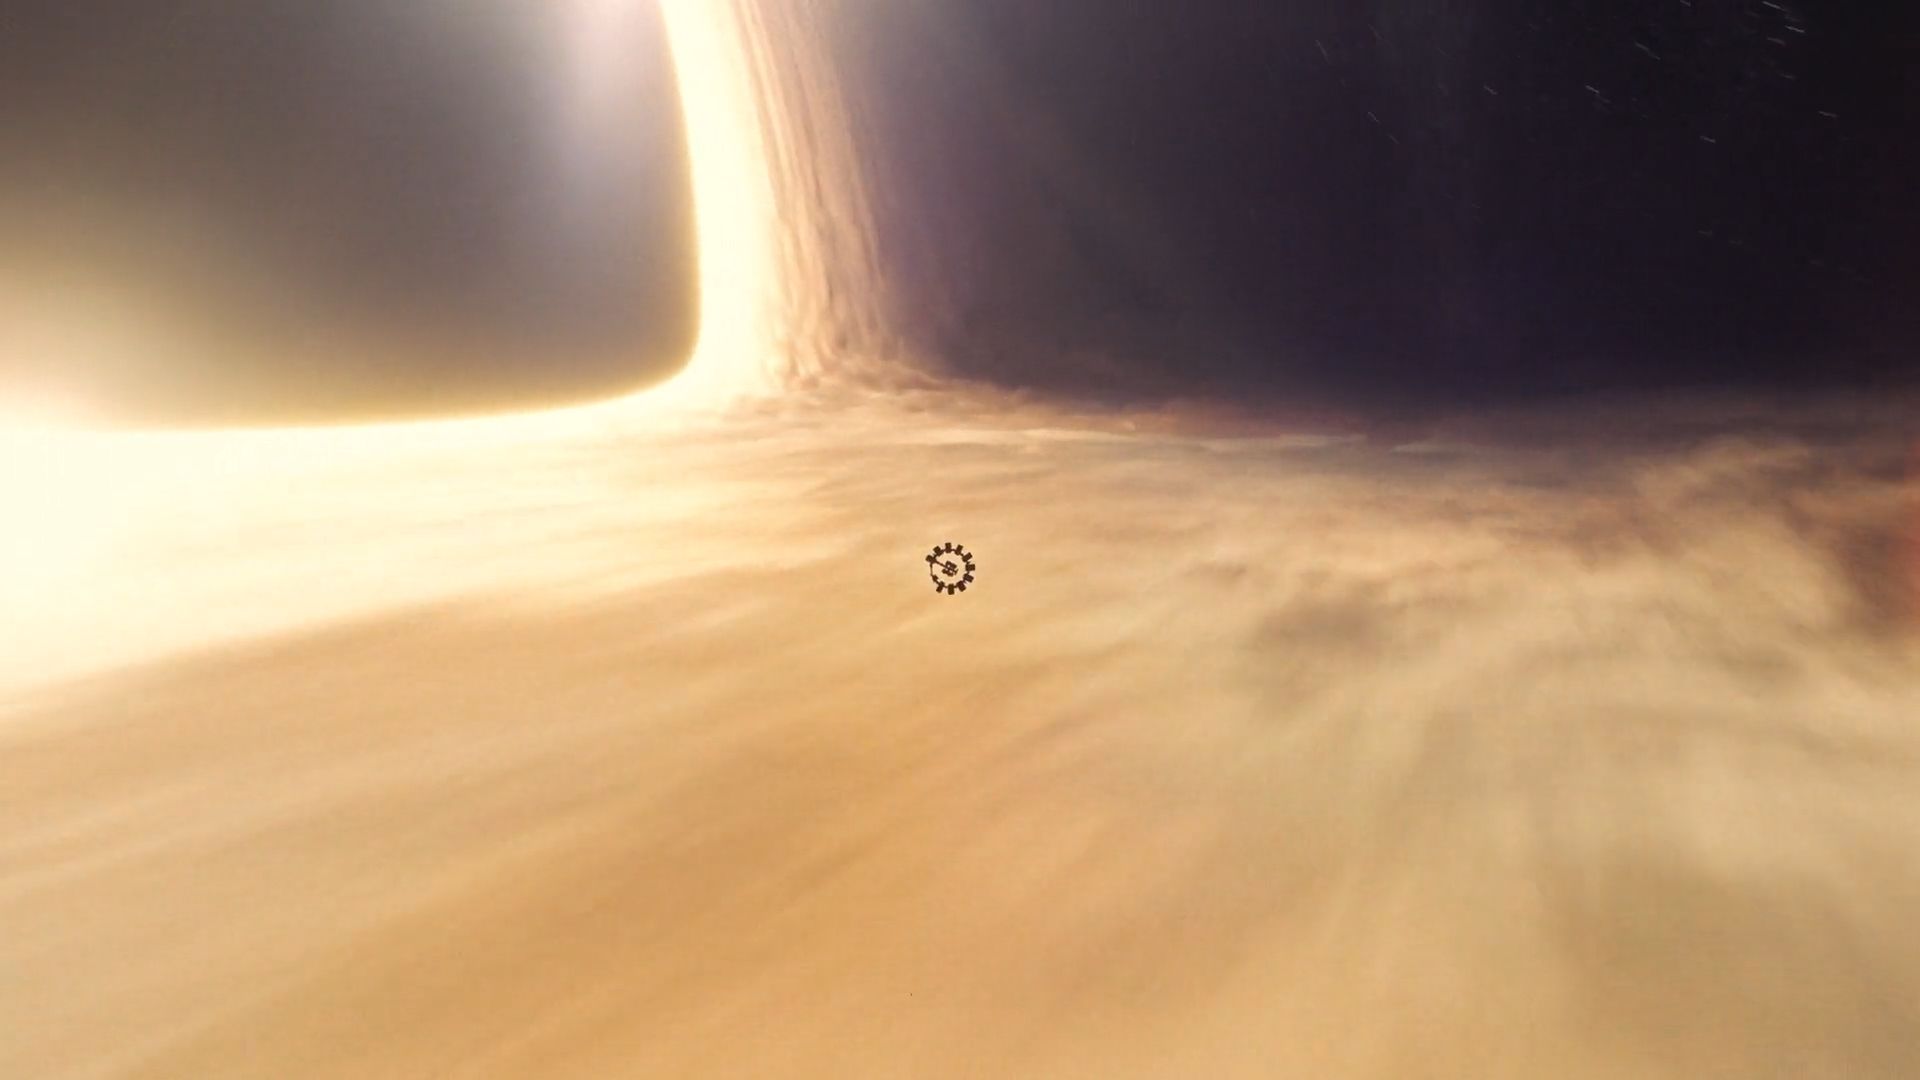 interstellar, movie Phone Background